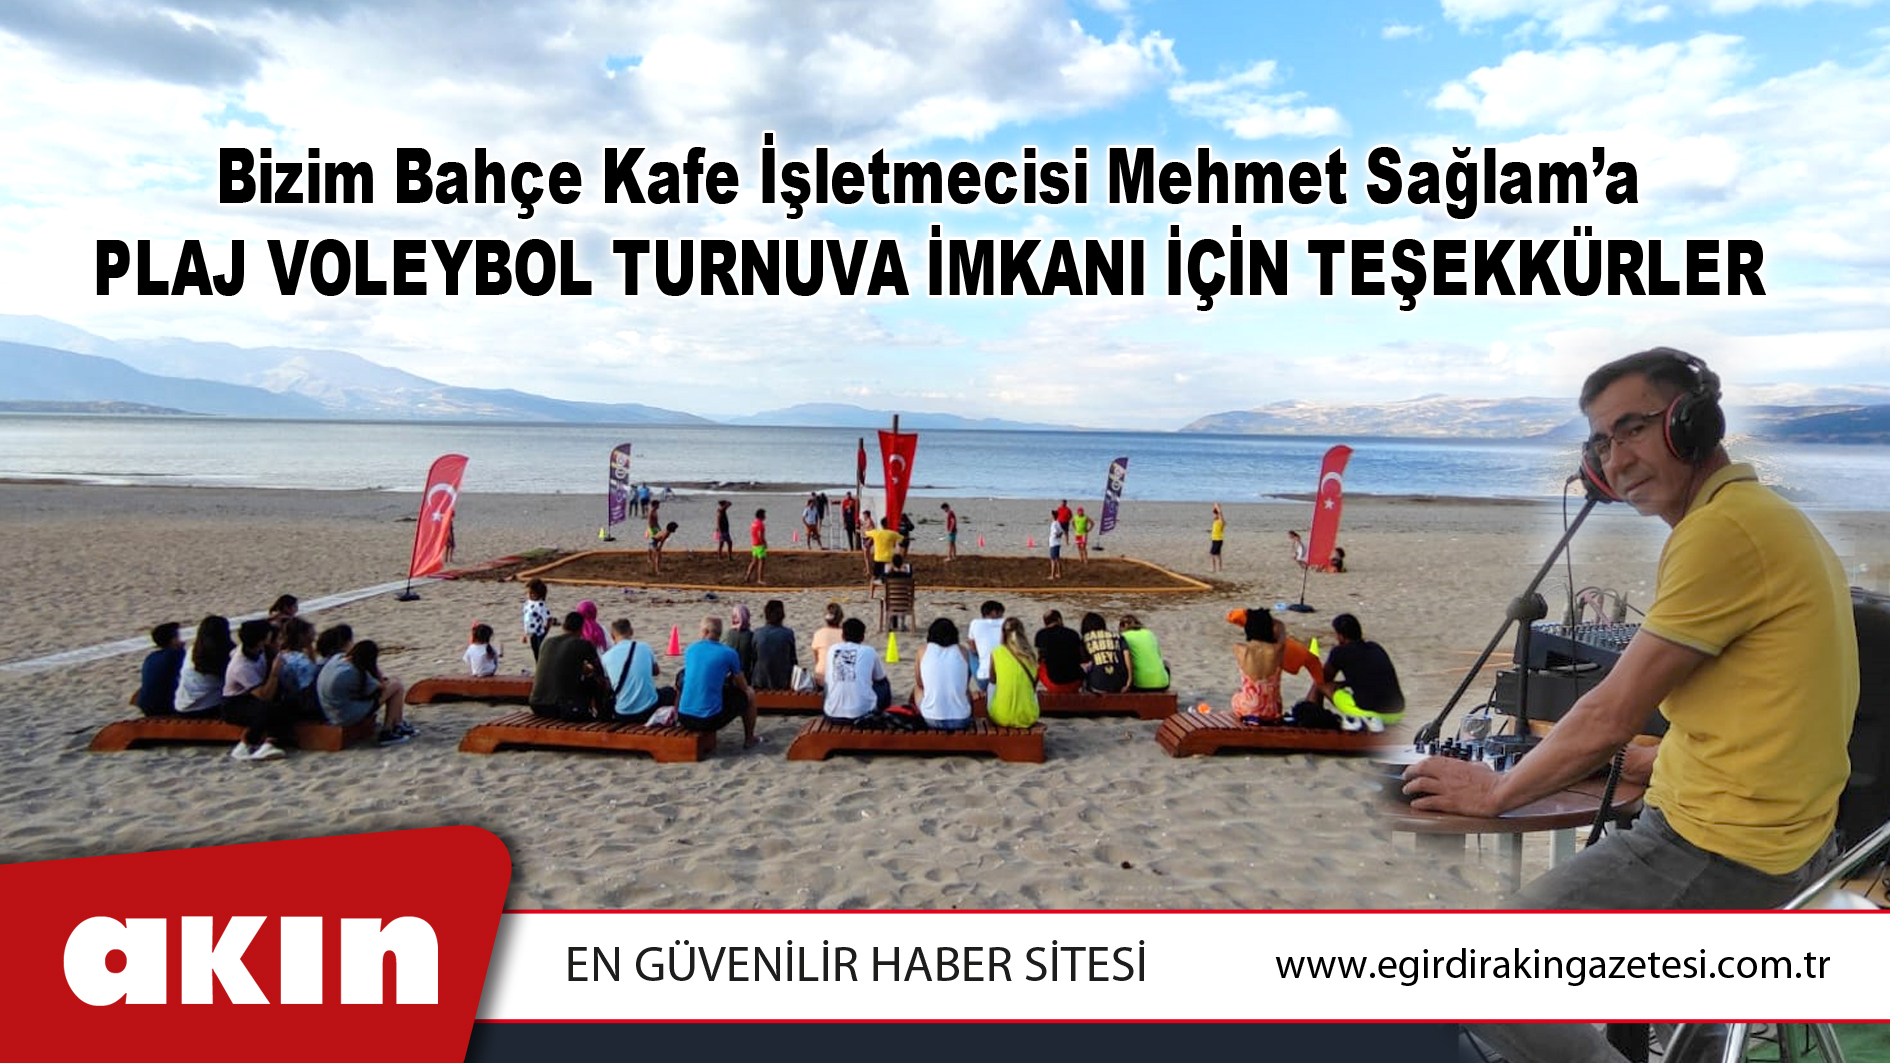 Bizim Bahçe Kafe İşletmecisi Mehmet Sağlam’a Plaj Voleybol Turnuva İmkanı İçin Teşekkürler